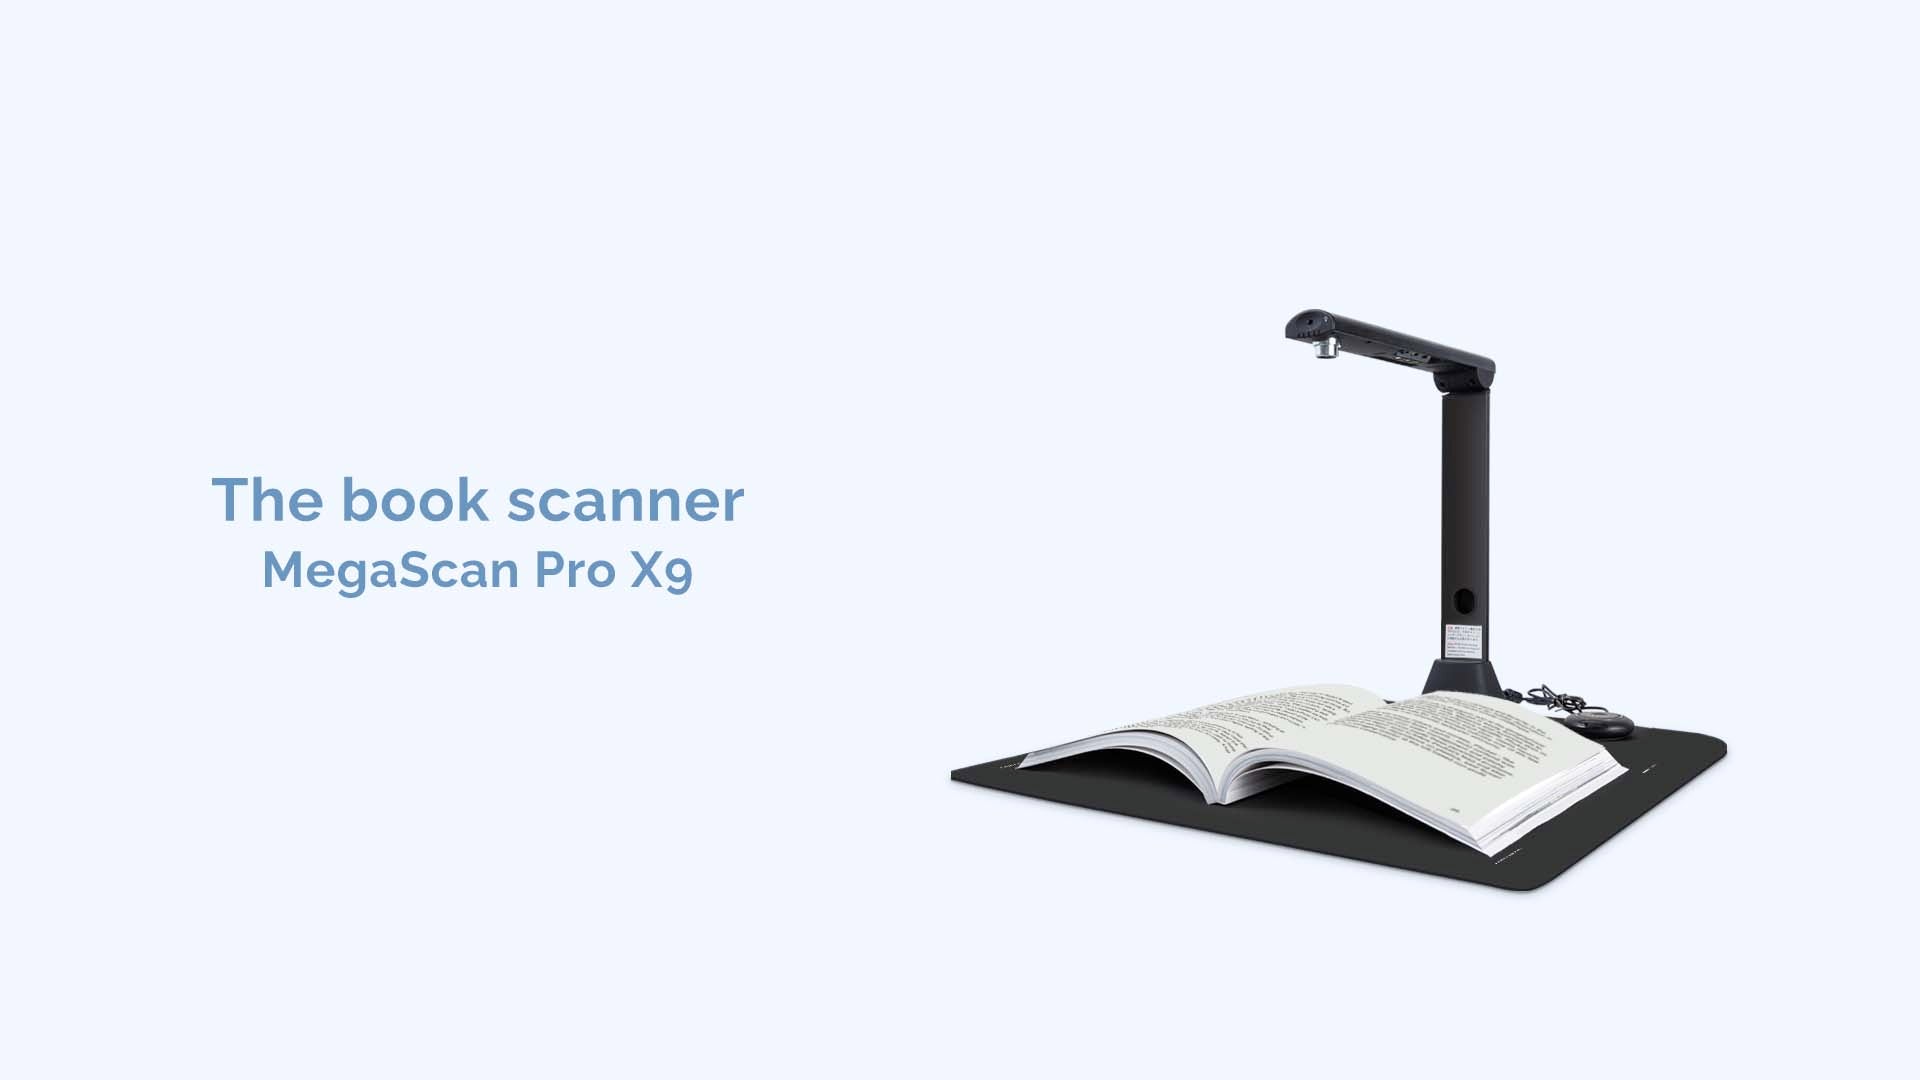 Megascan pro X9 book scanner